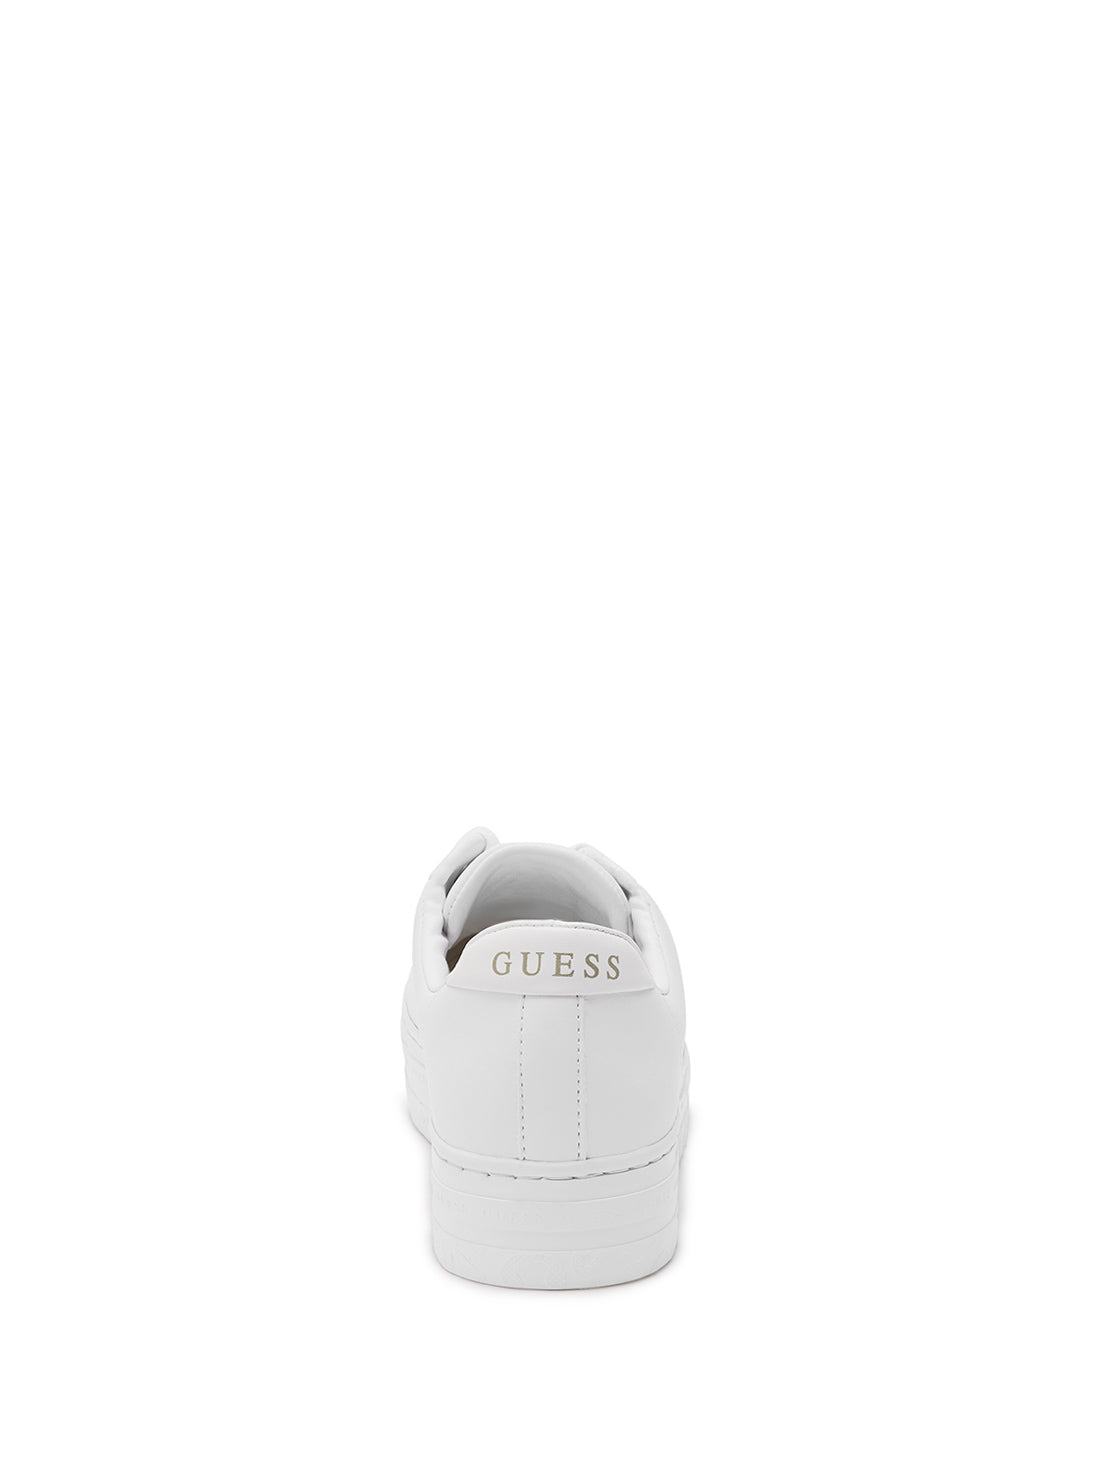 GUESS Women's White Lullu Logo Low Top Sneakers LULLU3 Back View